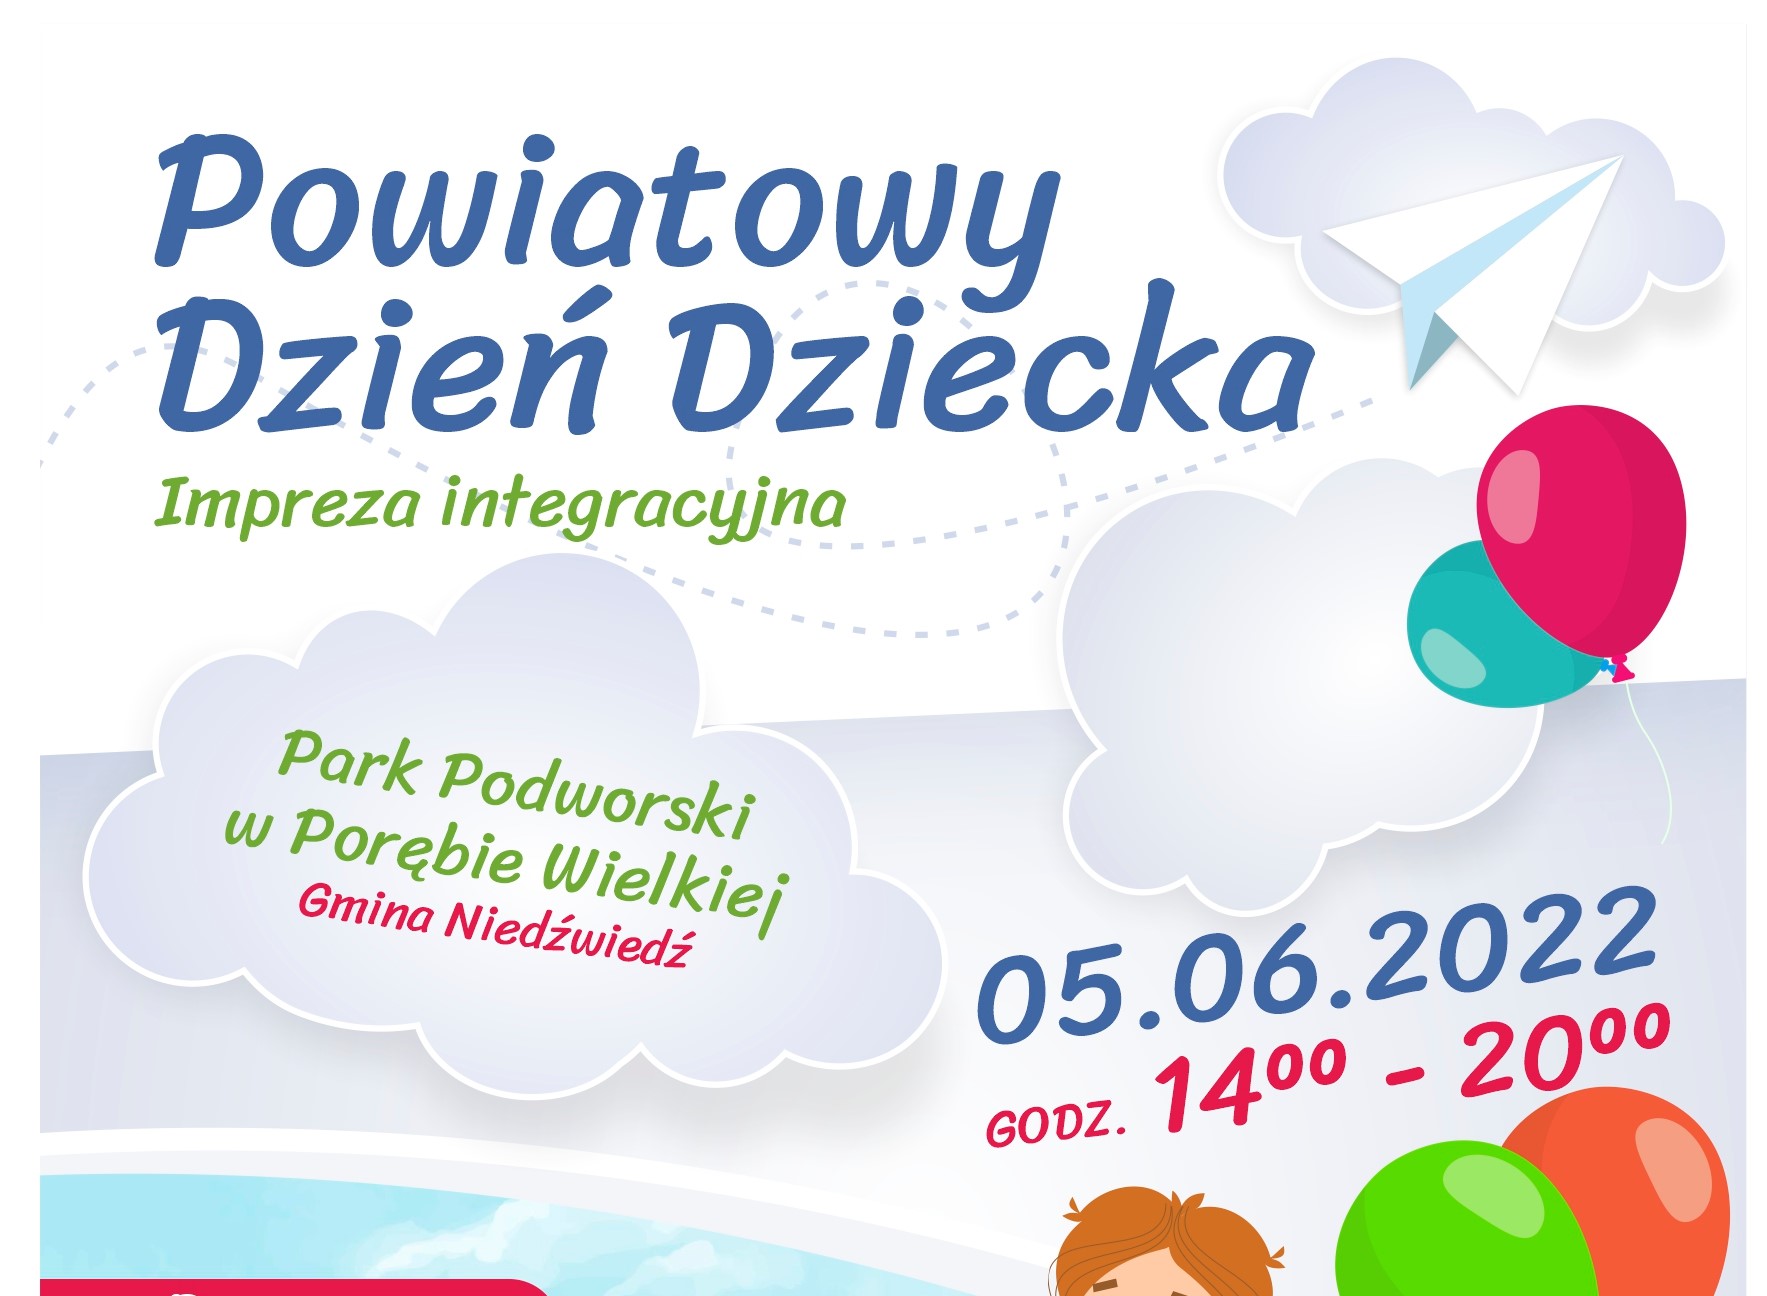 Powiatowy Dzień Dziecka Impreza Integracyjna Park Podworski w Porębie Wielkiej (Gmina Niedźwiedź) 5.06.2022 - zaaproszenie